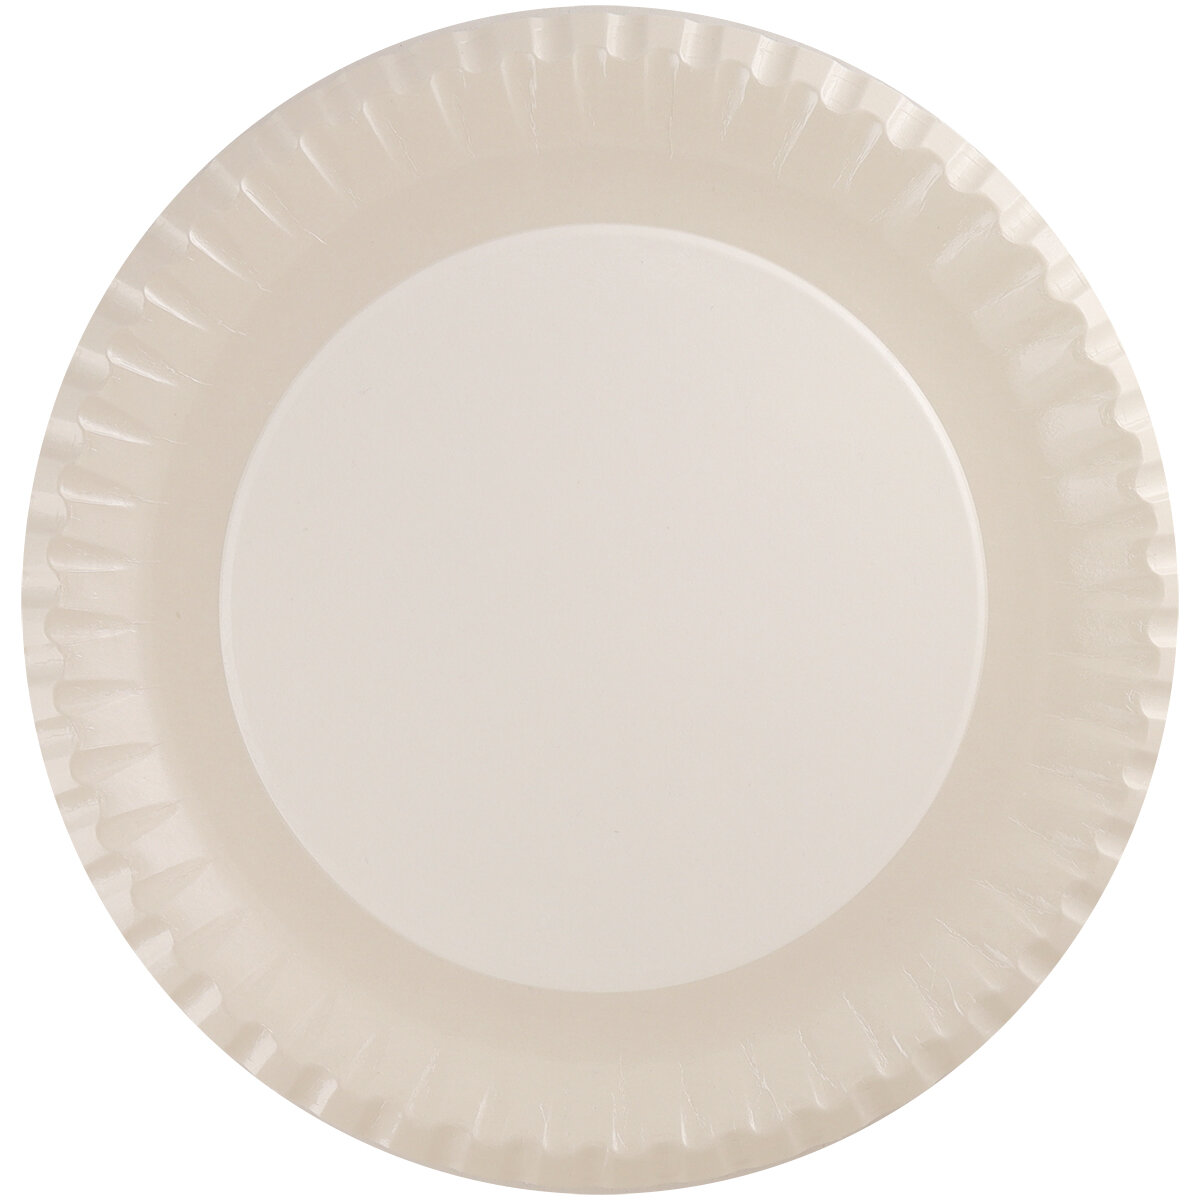 Бумажные одноразовые тарелки, бежевые, диаметр 23 см, (Германия), 10 шт.